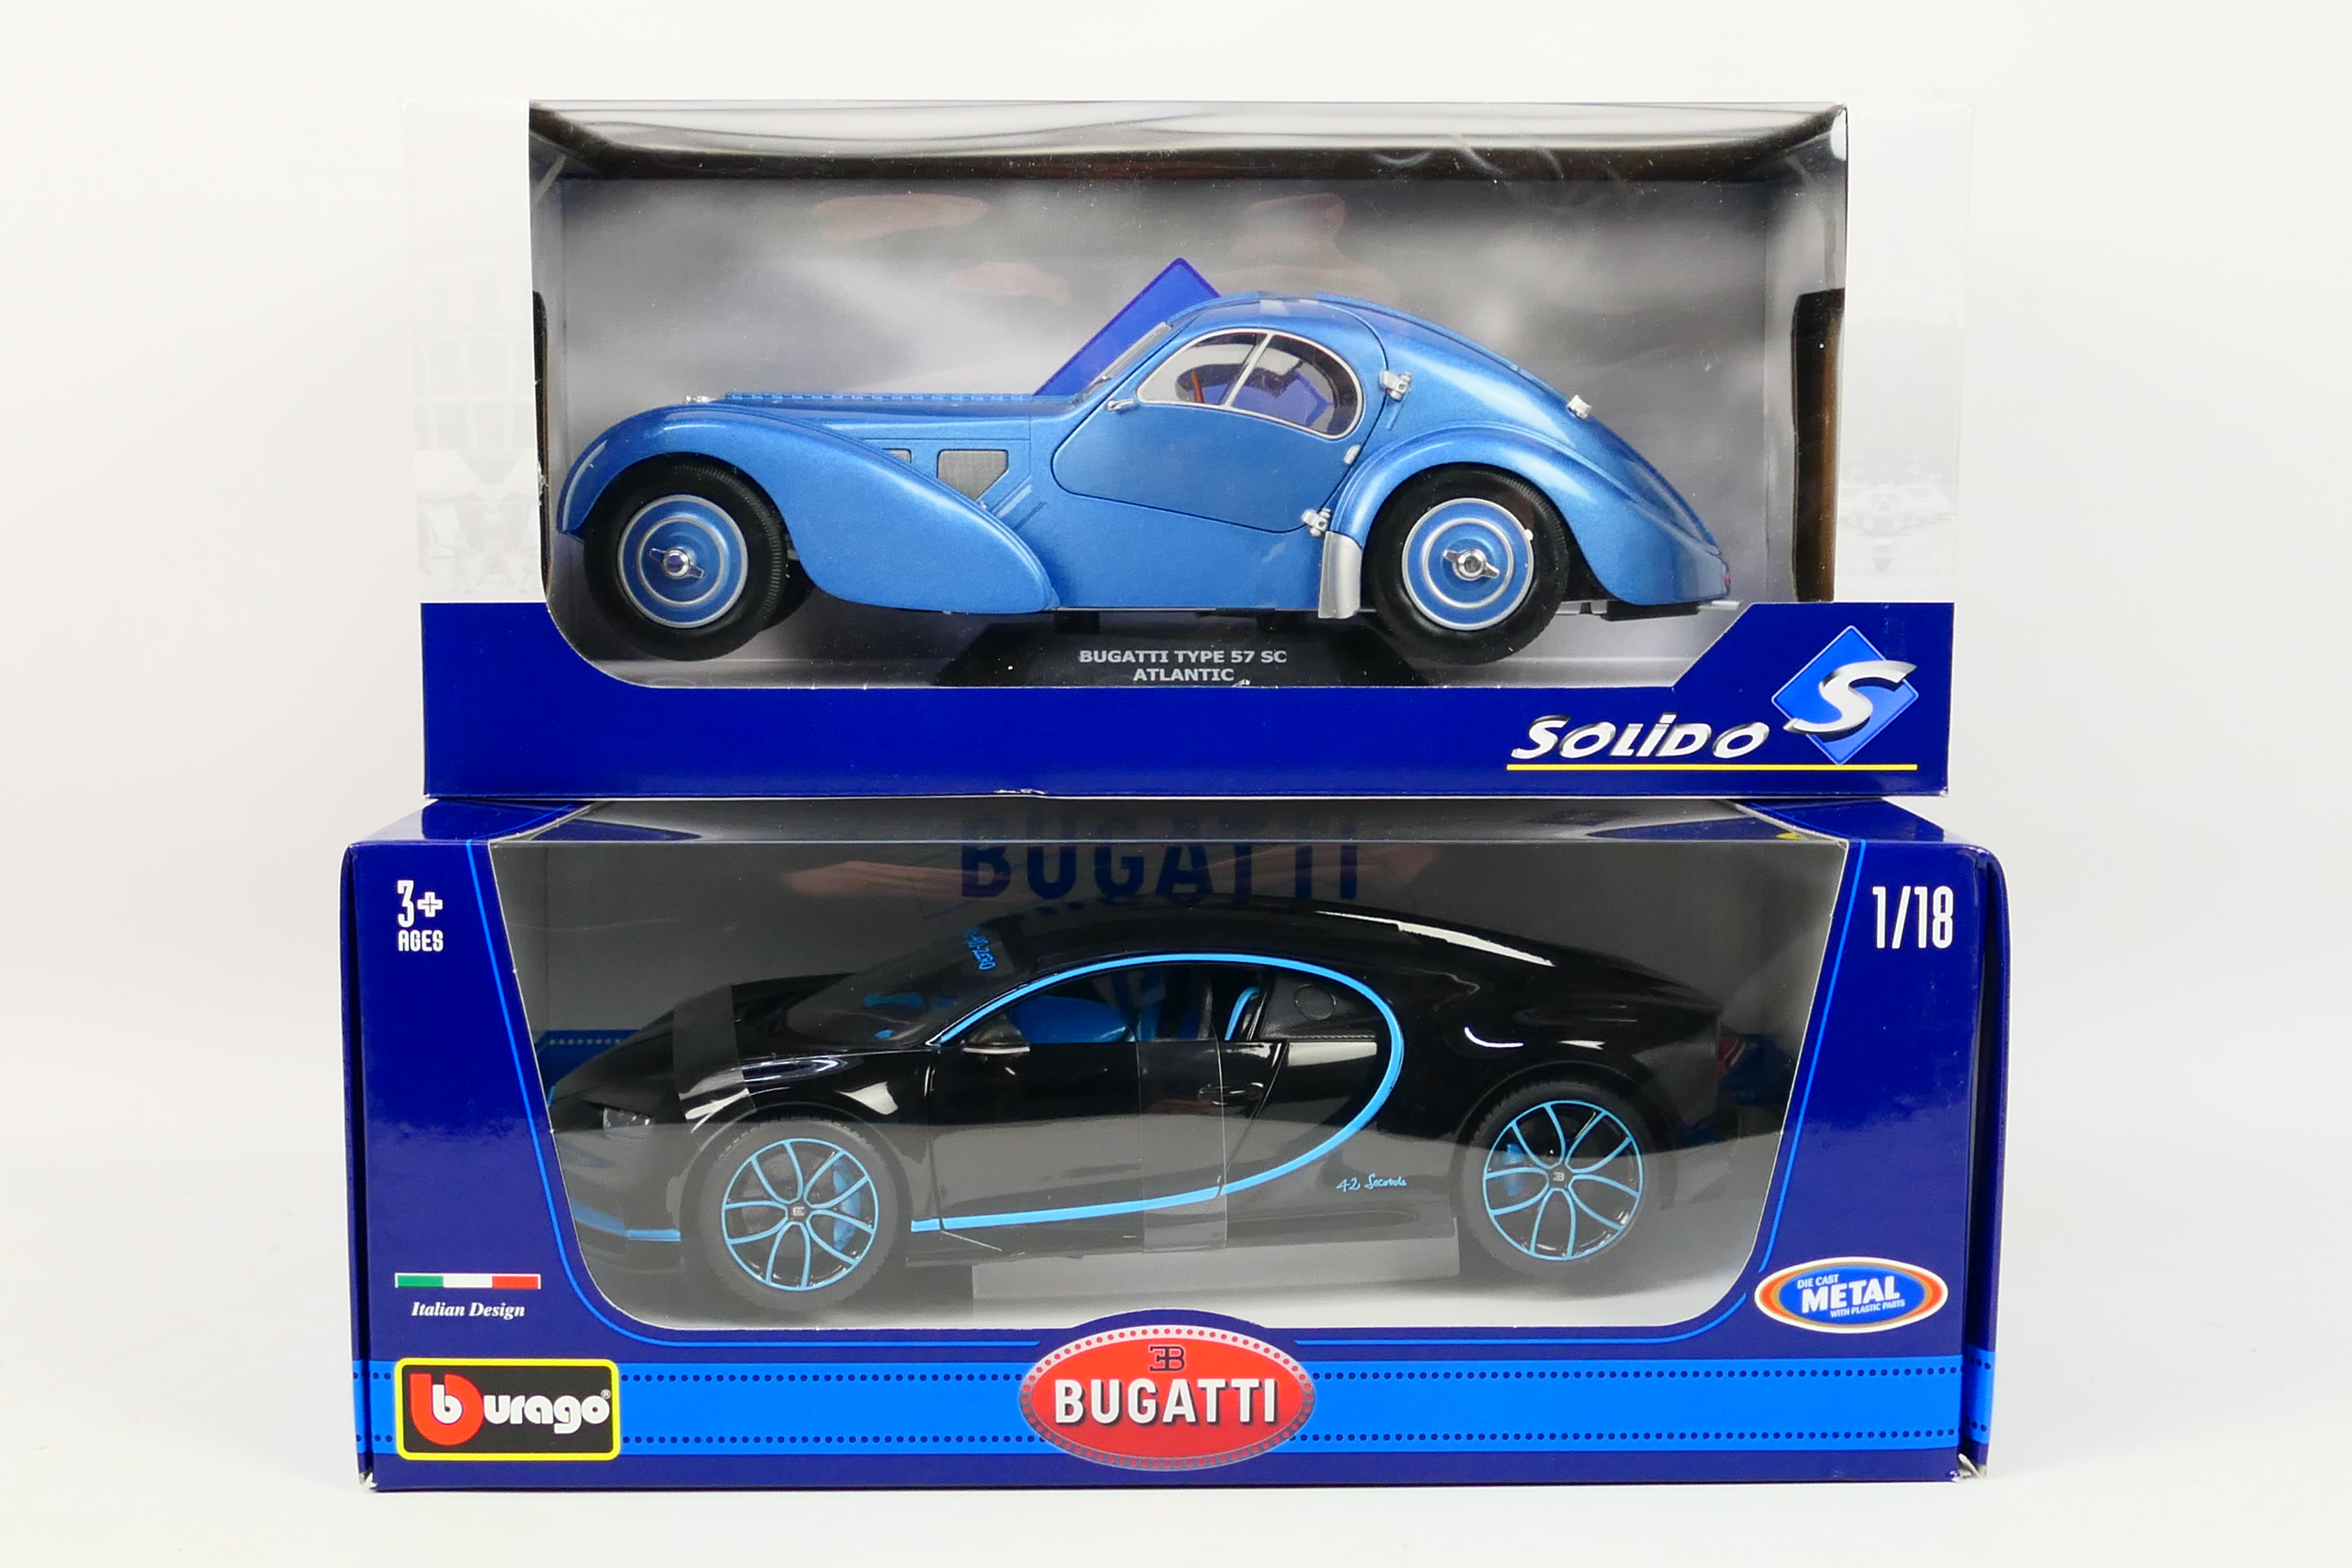 Solido - Bburago - Two boxed diecast 1:18 scale Bugatti model cars.